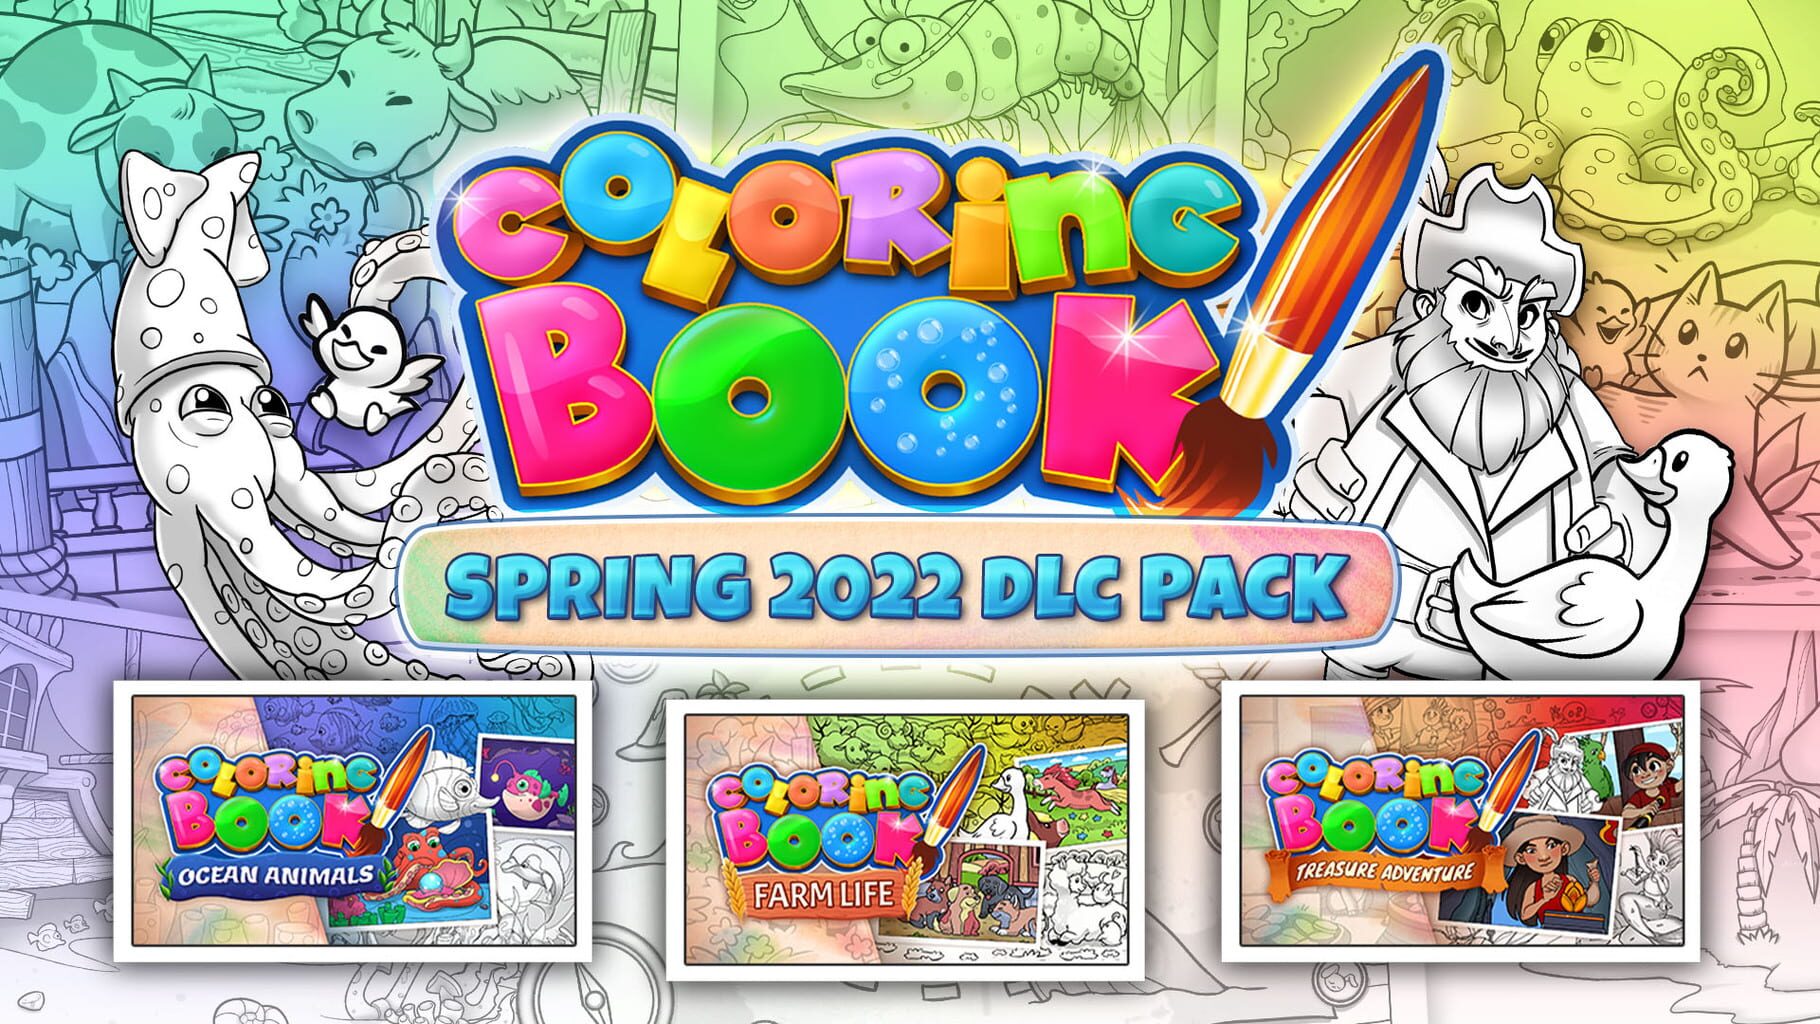 Coloring Book: Spring 2022 DLC Pack artwork